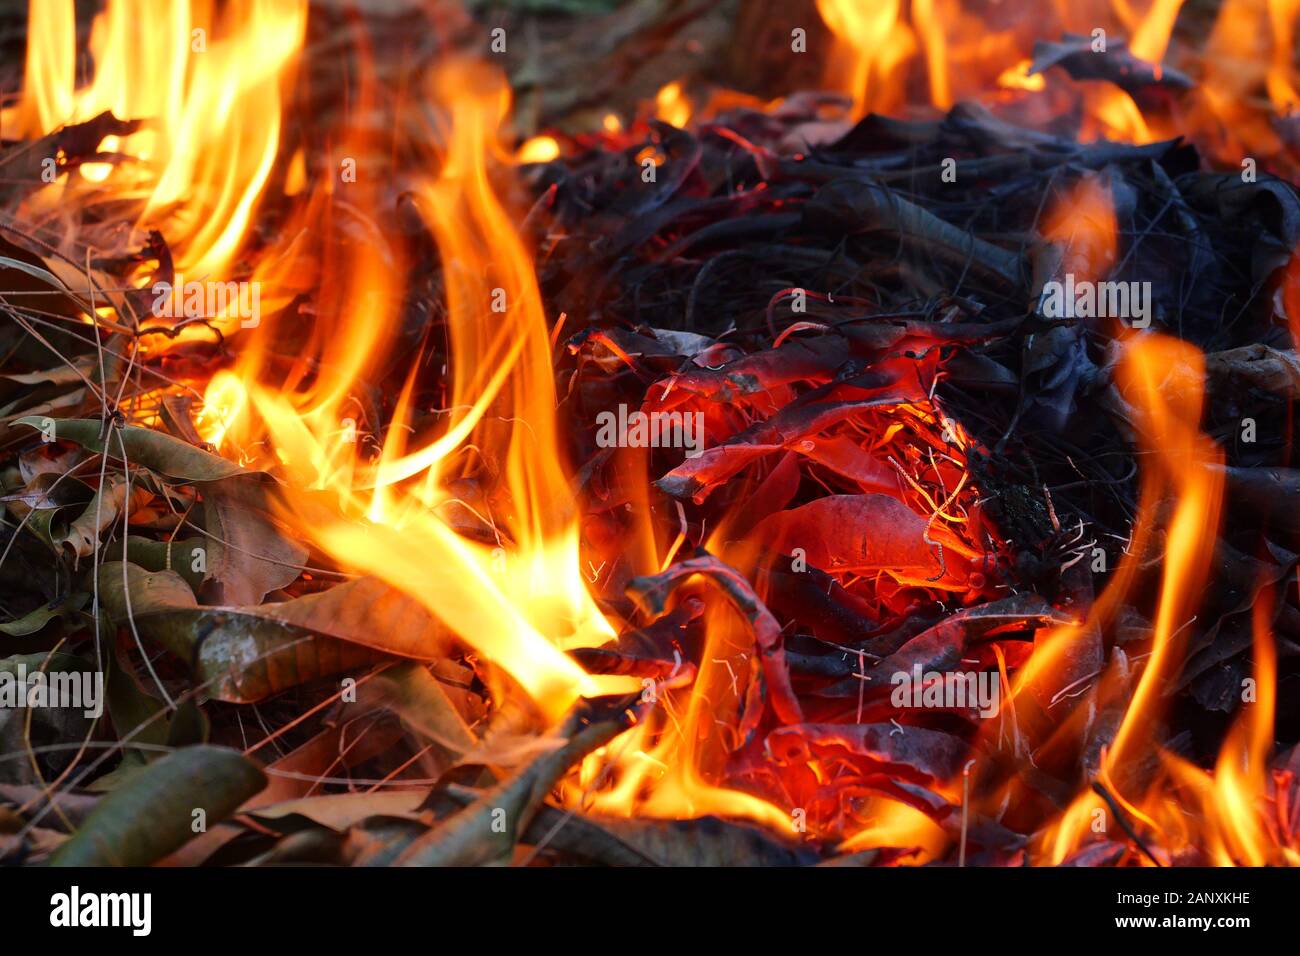 Orange Farbe Feuer Flamme und schwarzen Rauch von brennenden Stöcke, Lagerfeuer mit Verbrennungsluft Schadstoff, Brennholz und Müll brennen Stockfoto